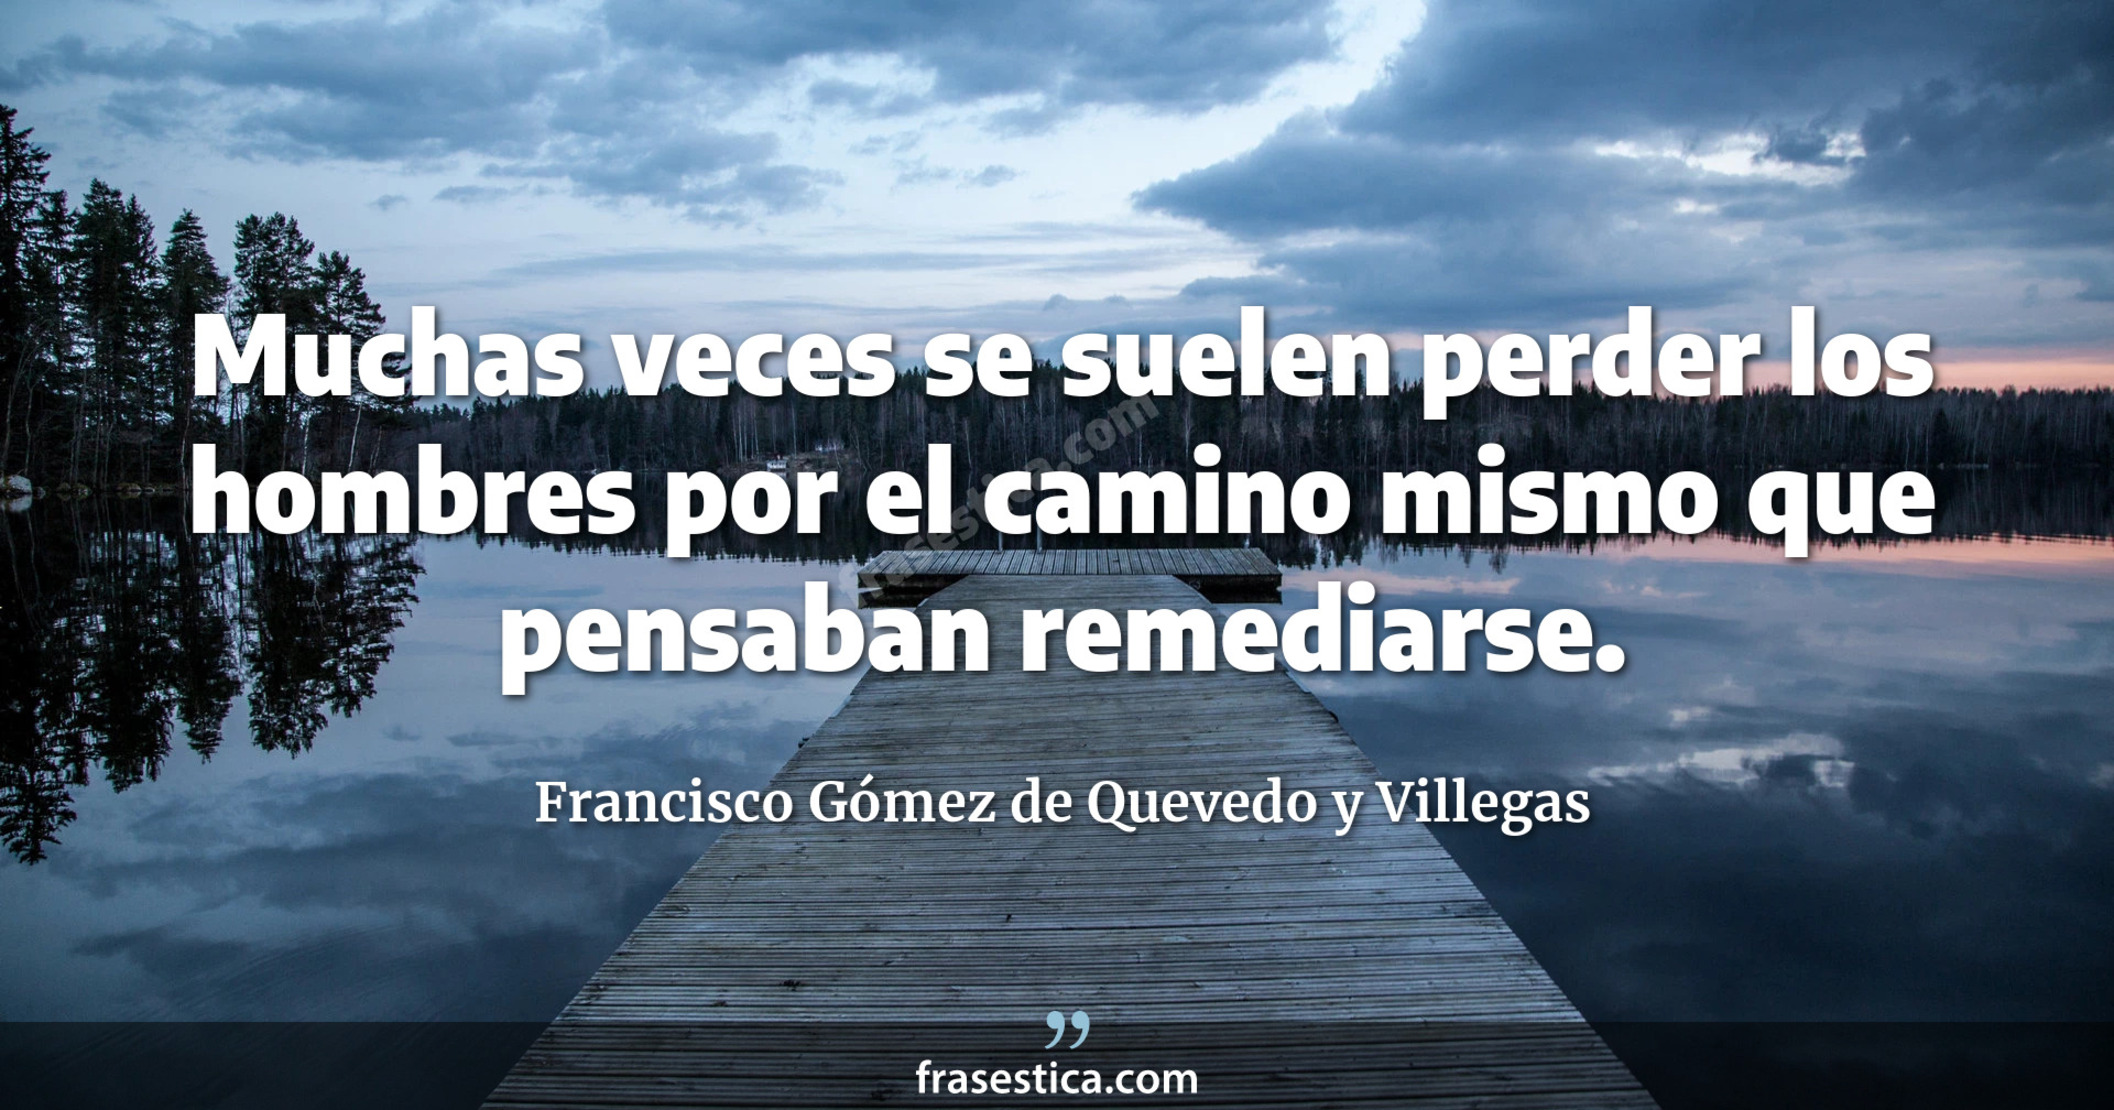 Muchas veces se suelen perder los hombres por el camino mismo que pensaban remediarse. - Francisco Gómez de Quevedo y Villegas